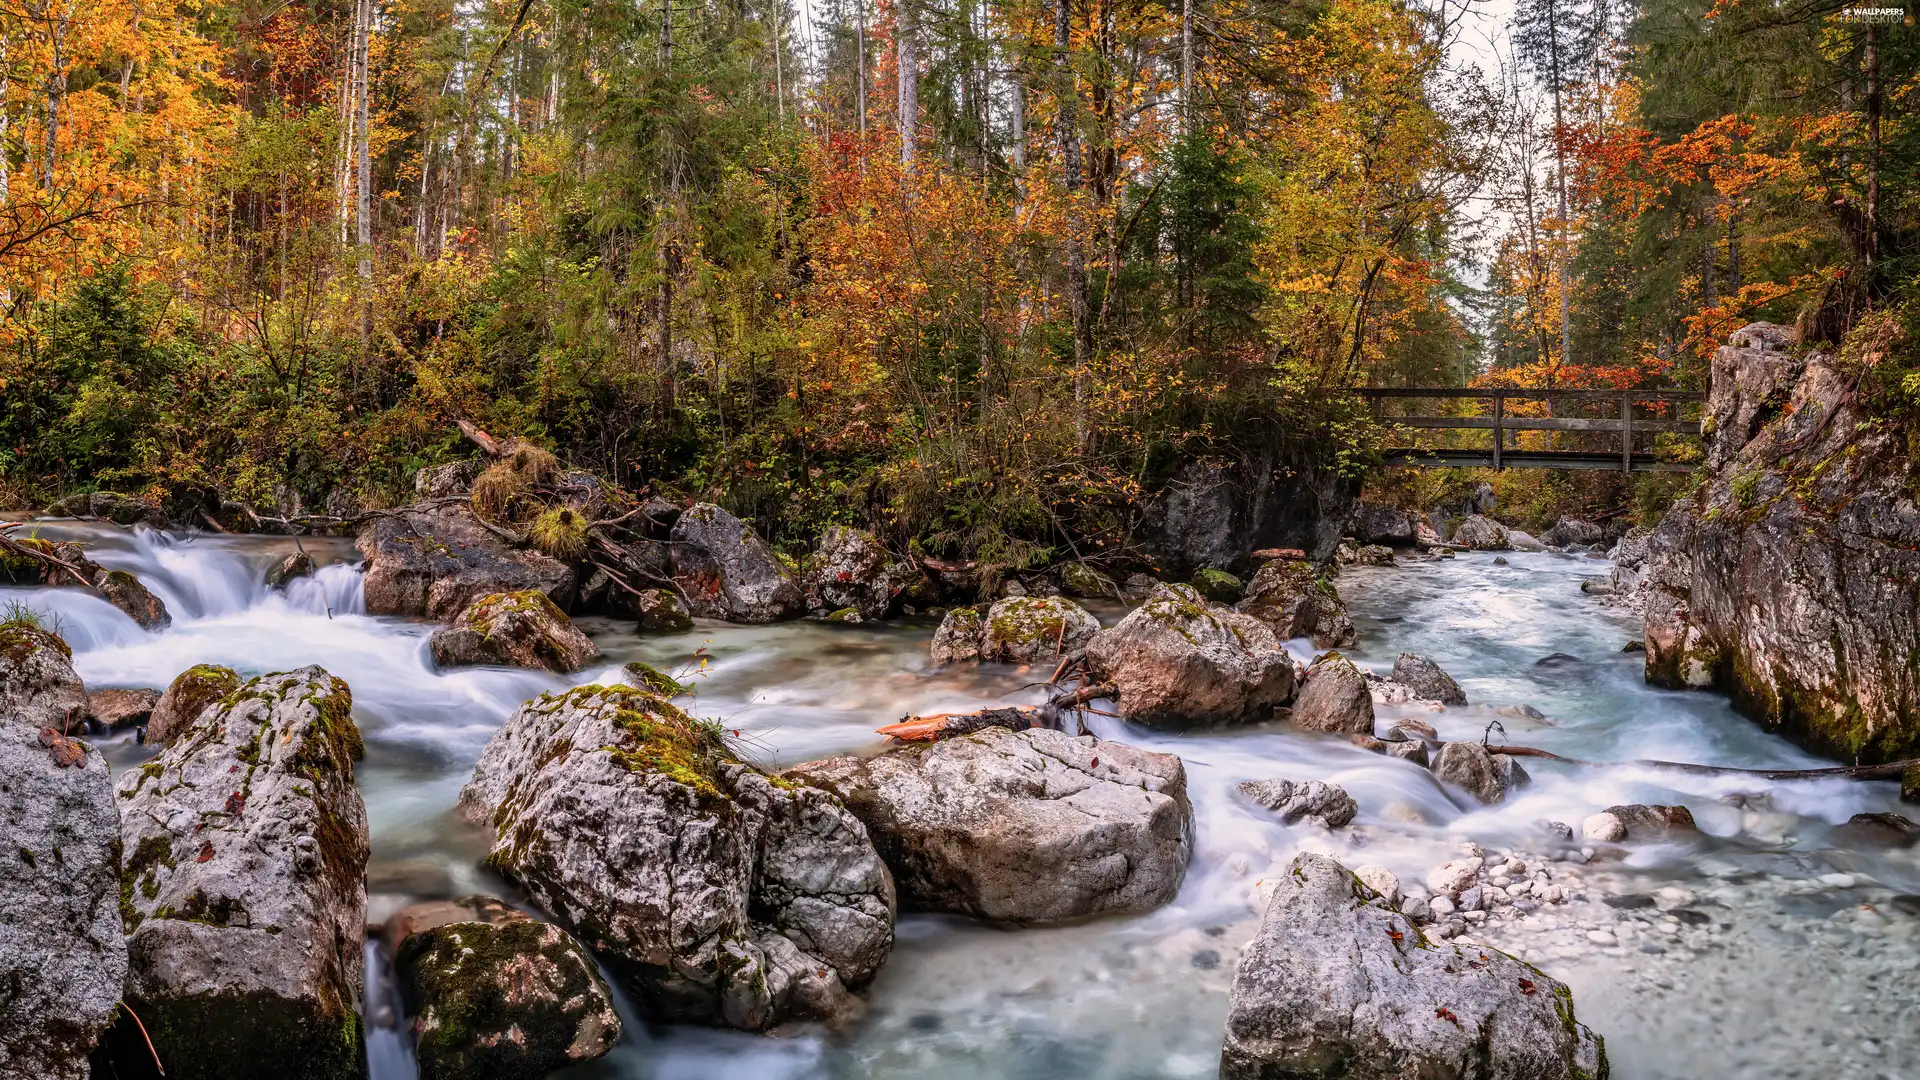 River, Stones, bridges, forest, autumn